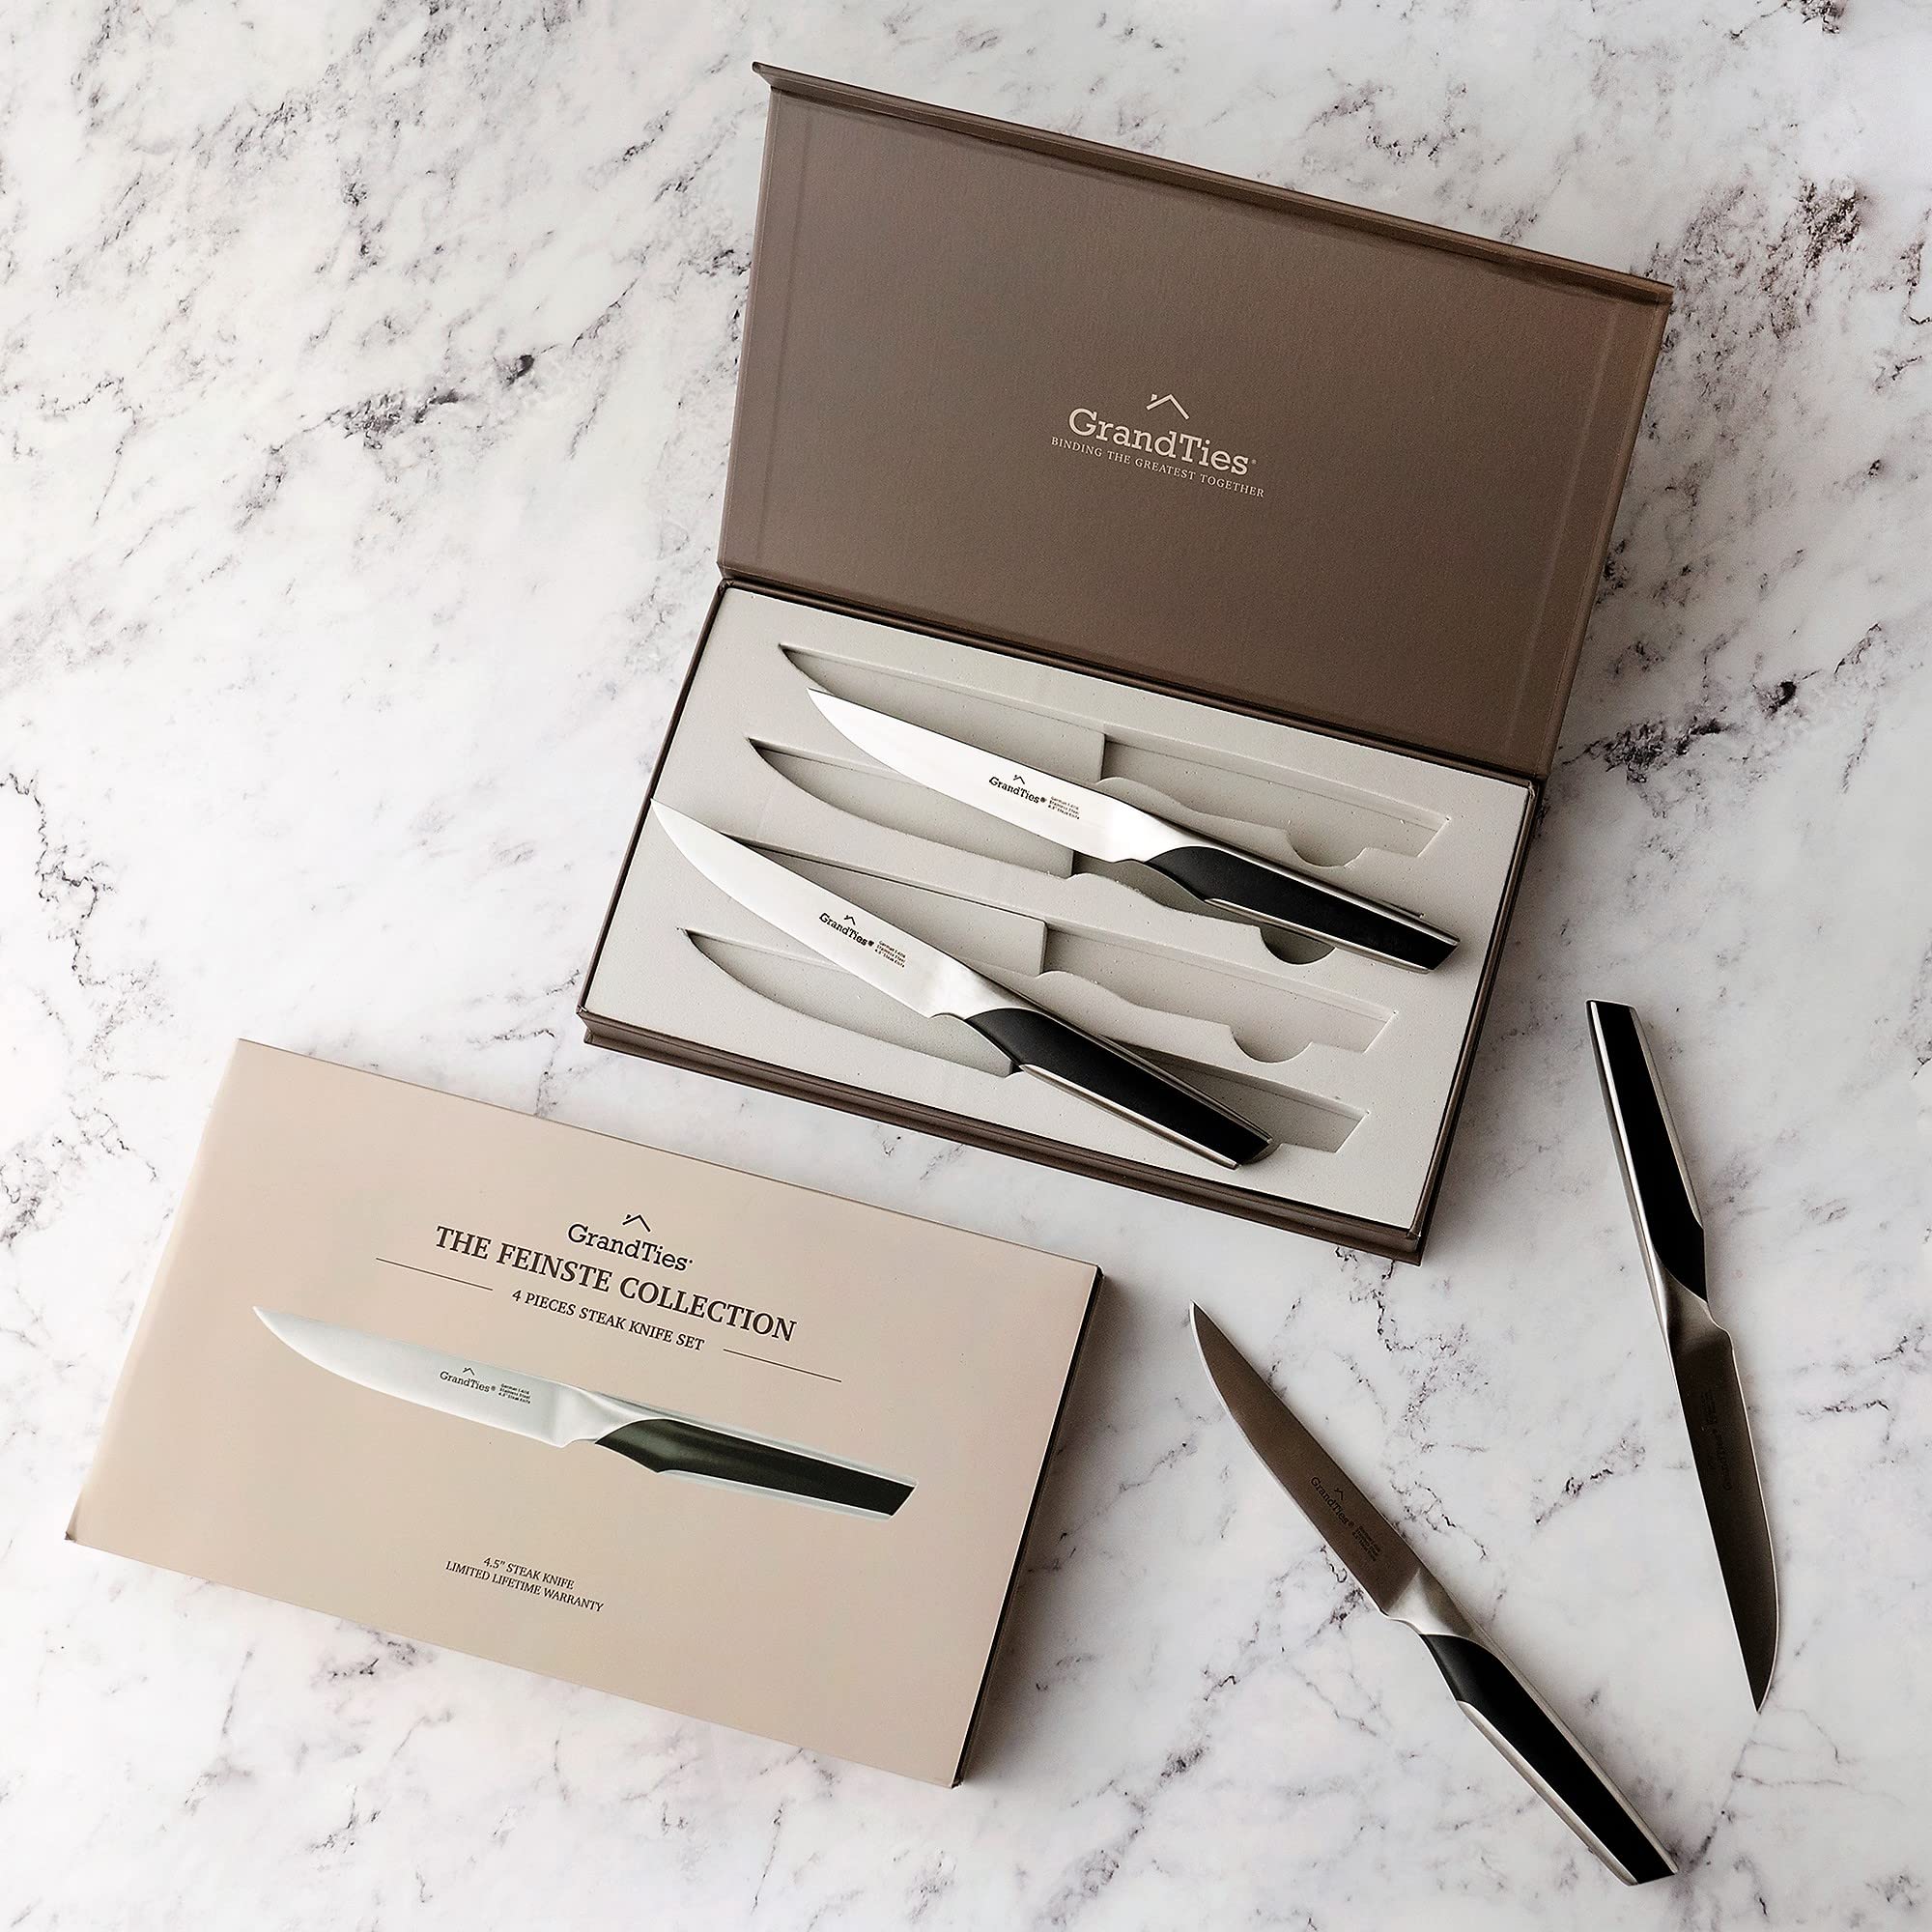 GRANDTIES FEINSTE Ultra Sharp Premium Steak Knife Non Serrated | High Carbon German Stainless Steel Steak Knives Set of 4 | Full Tang Knife Dinnerware Sets Gift with Designed Knife Box